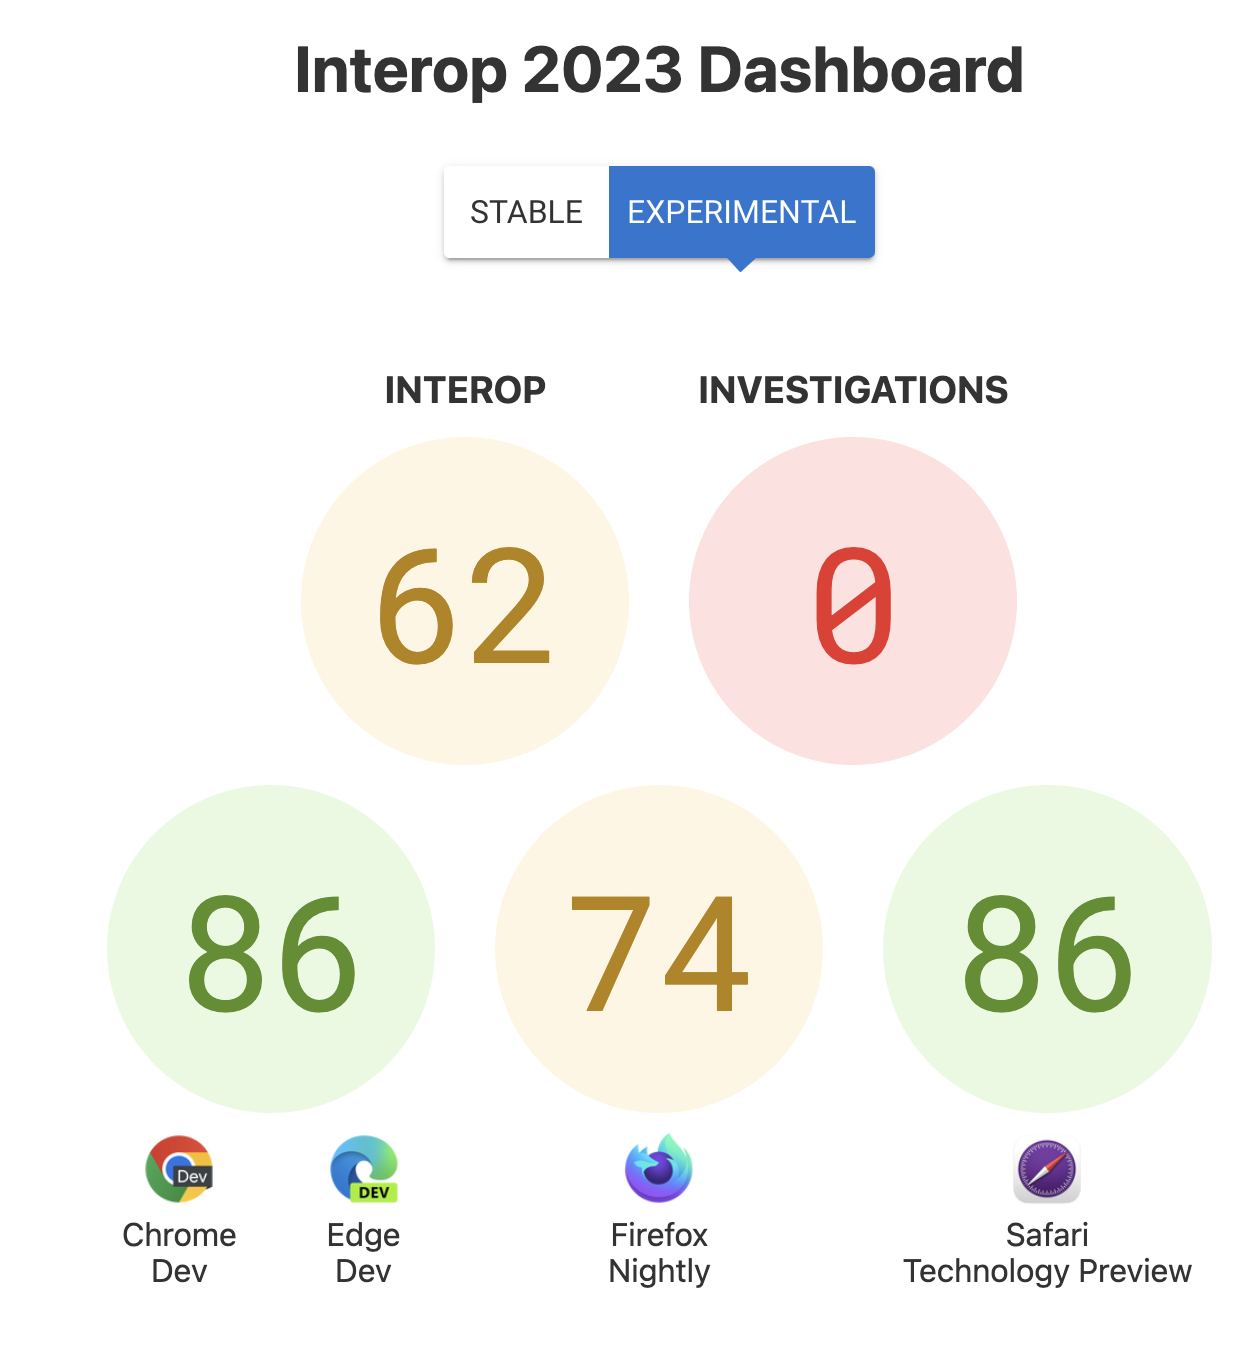 Les scores d&#39;interopérabilité globaux: 62, Investigations: 0, et les scores par navigateur - 86 pour Chrome et Edge, 74 pour Firefox et 86 pour Safari Technology Preview.